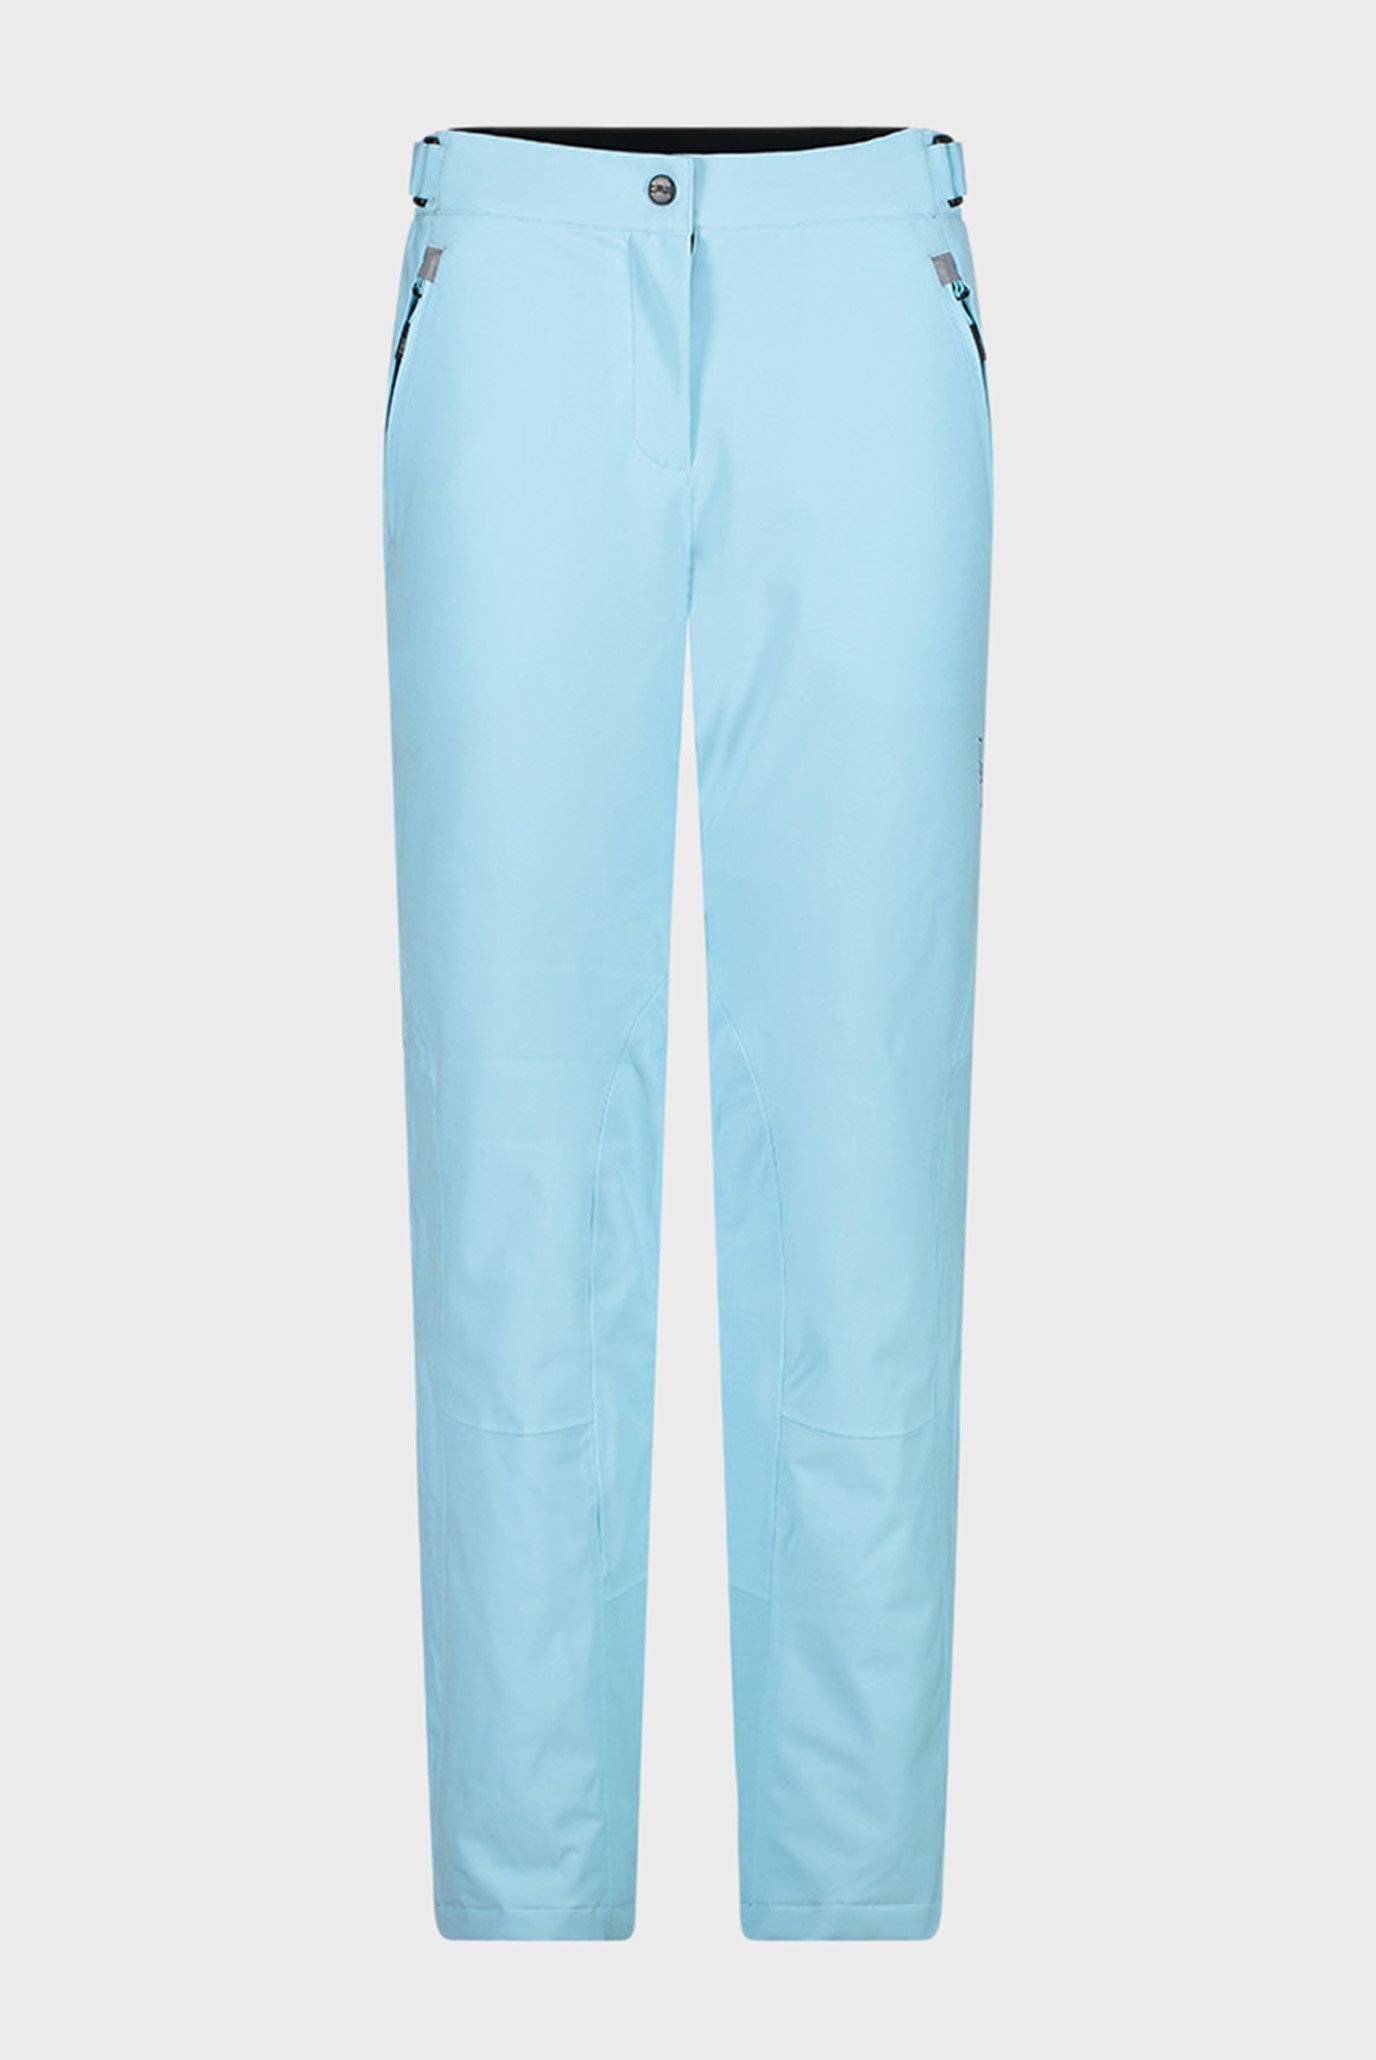 Жіночі блакитні лижні штани WOMAN PANT 1